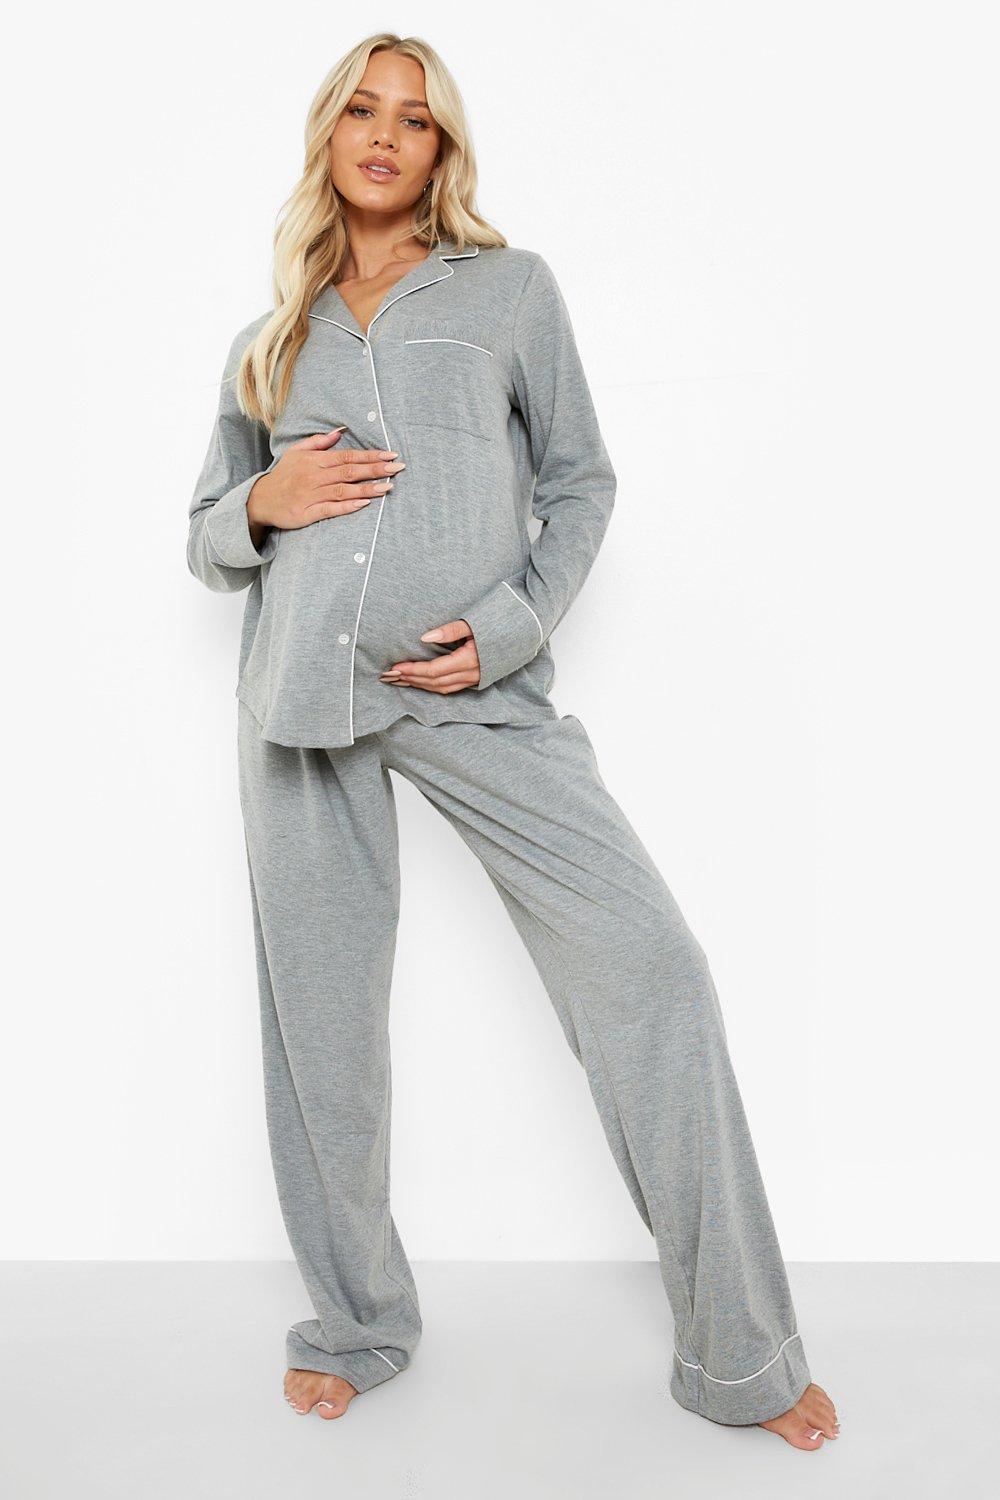 https://media.boohoo.com/i/boohoo/bzz01323_grey%20marl_xl_2/femme-grey%20marl-maternit%C3%A9---ensemble-de-pyjama-en-jersey